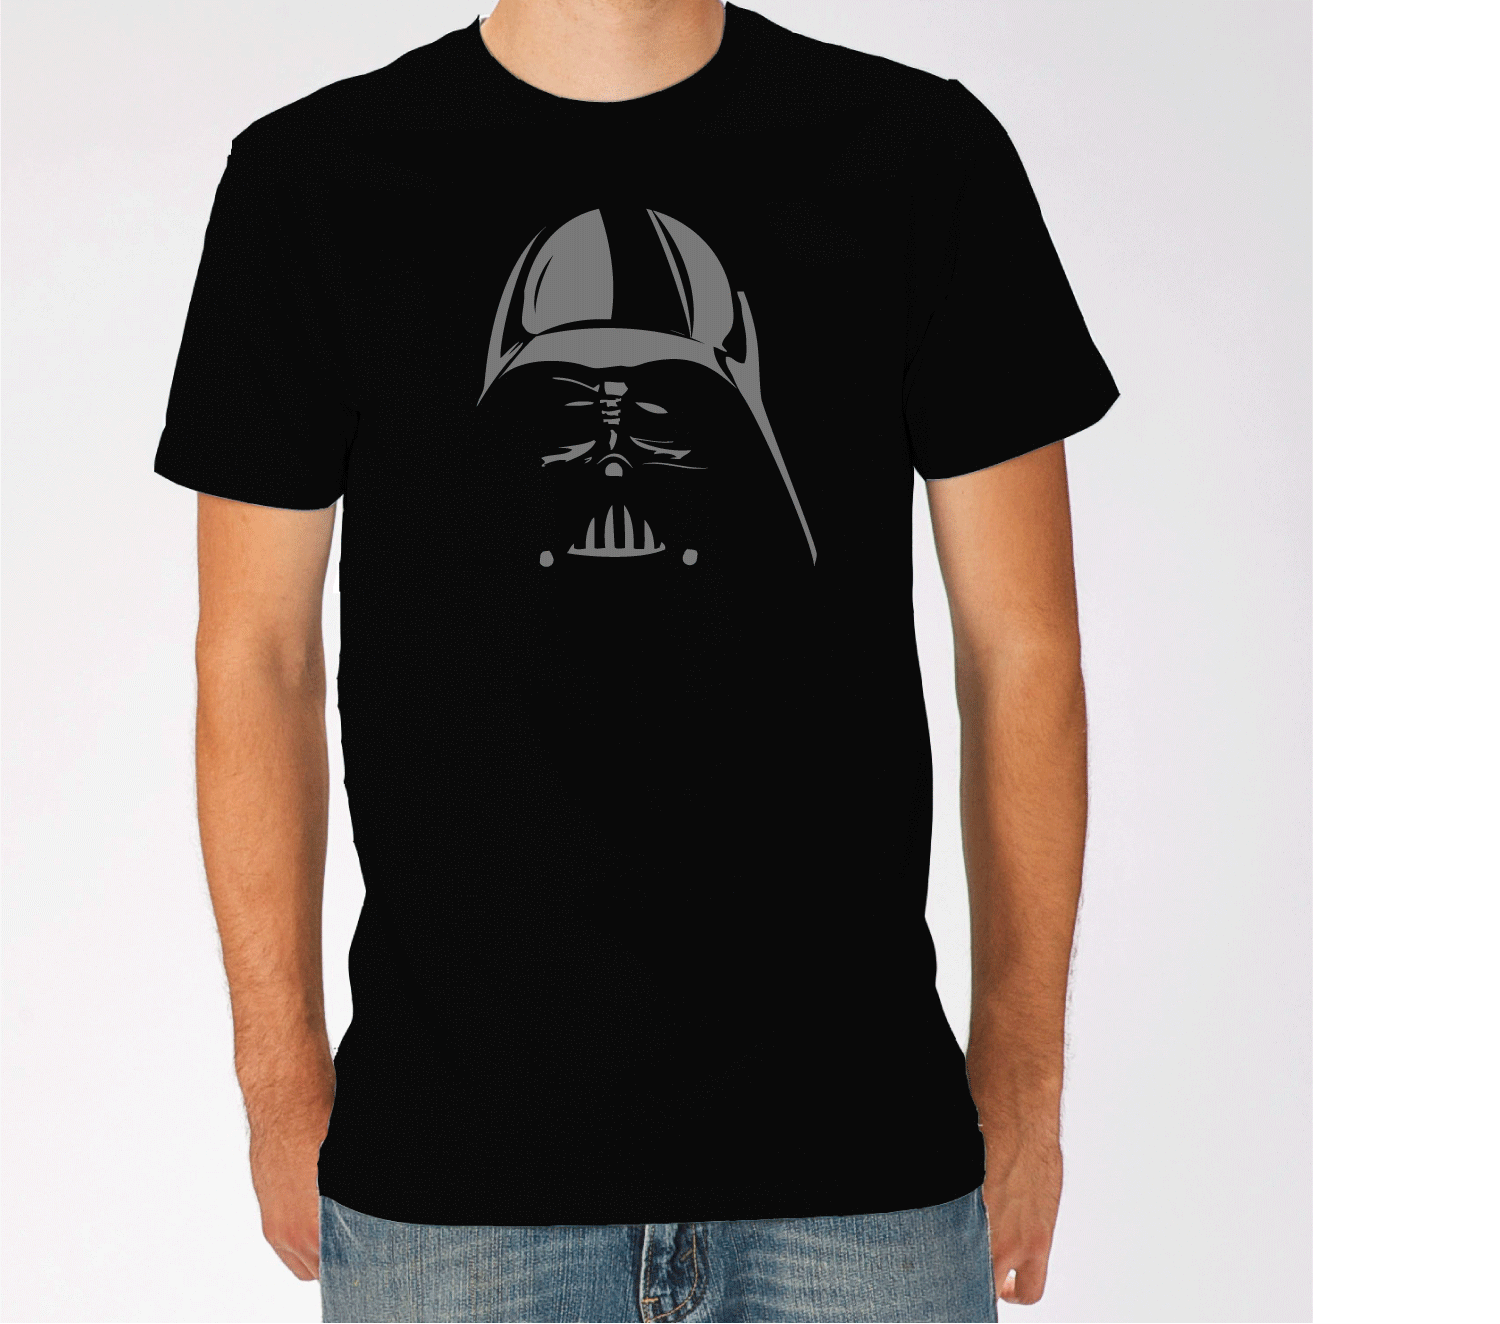 Star Wars Darth Vader Mask Black T-Shirt New and 11 similar items